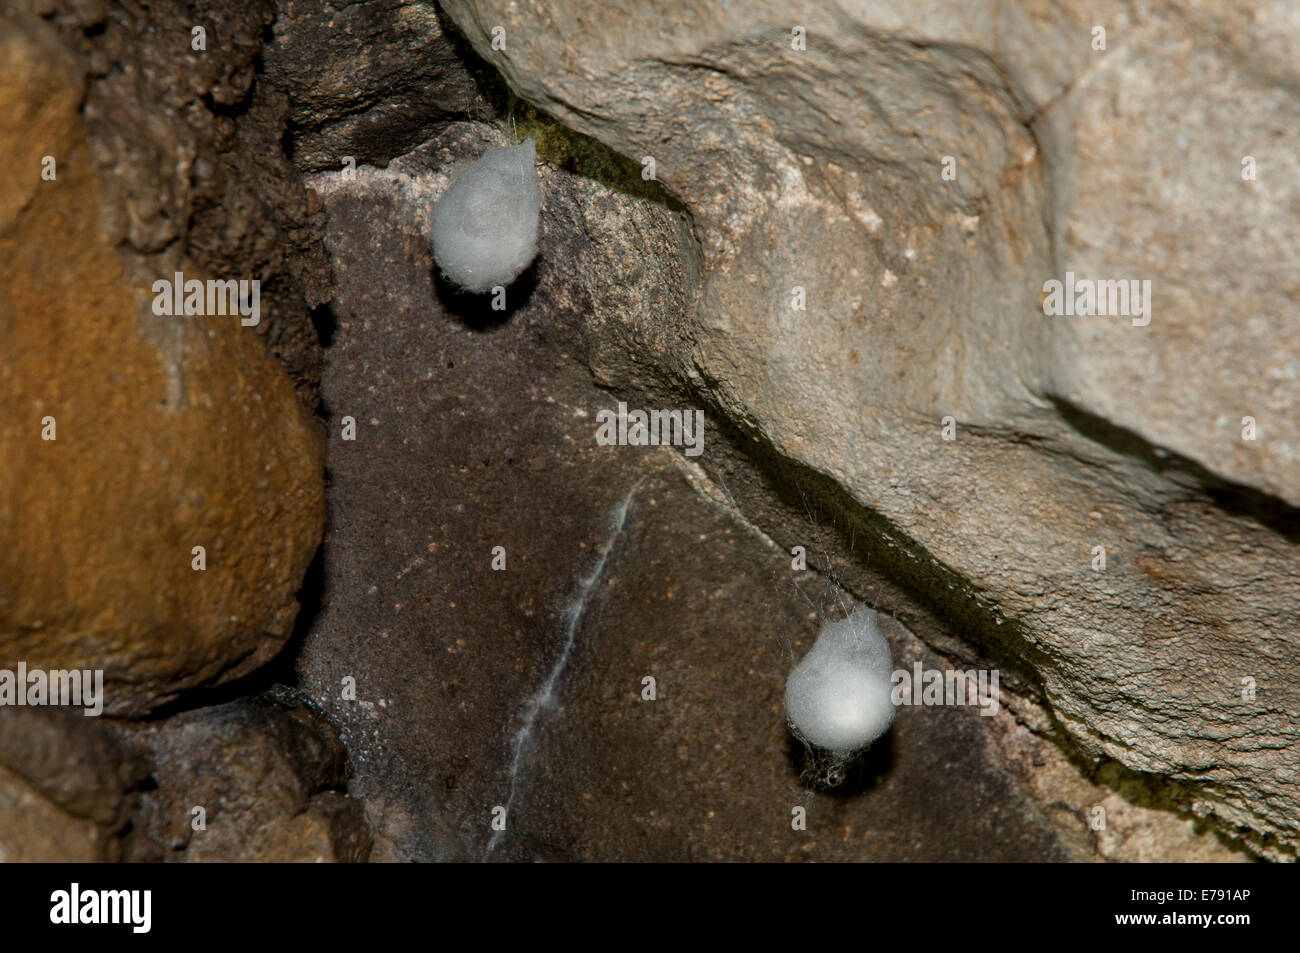 Sacs d'oeufs de l'araignée des grottes (Meta menardi) dans Ingleborough Cave, Parc National des Yorkshire Dales. Avril. Banque D'Images